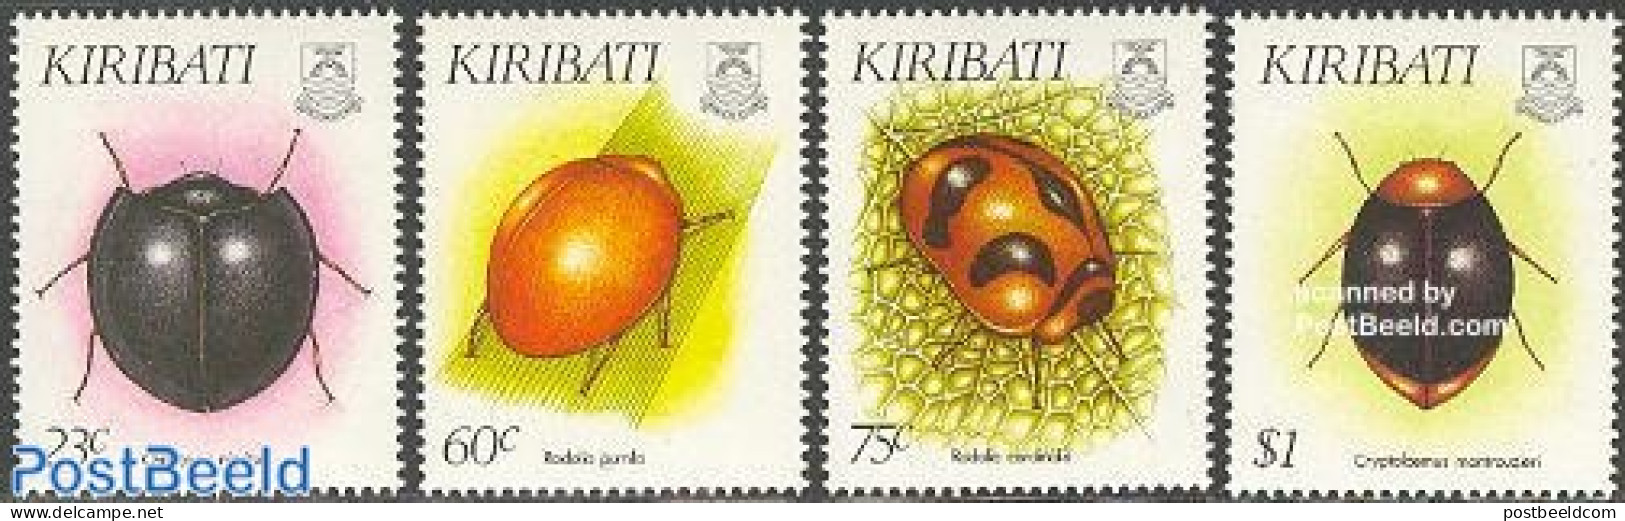 Kiribati 1993 Beetles 4v, Mint NH, Nature - Insects - Kiribati (1979-...)